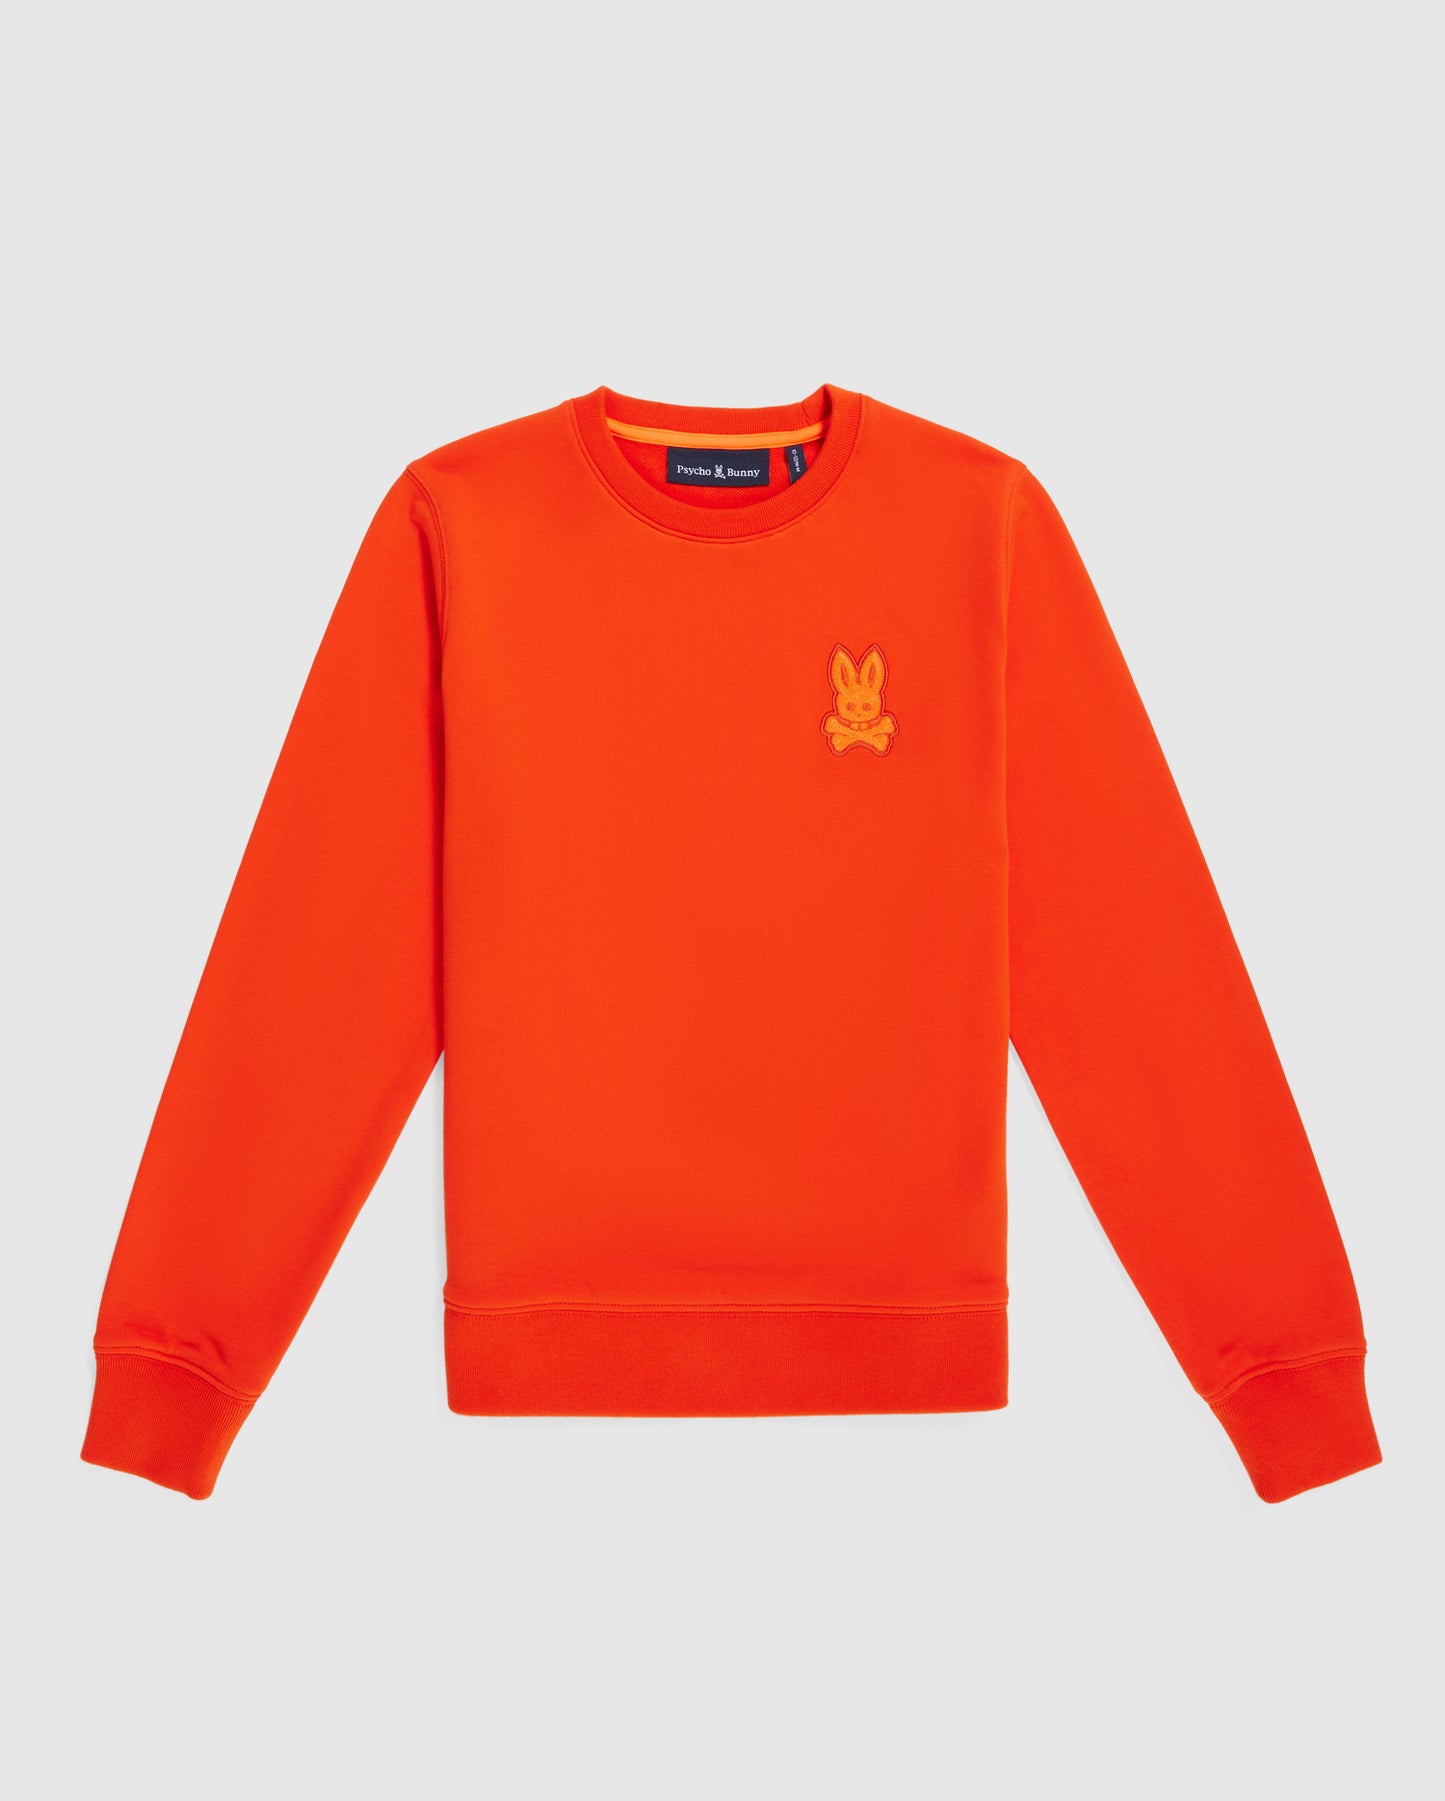 IetpShops, logo crew-neck sweatshirt Orange